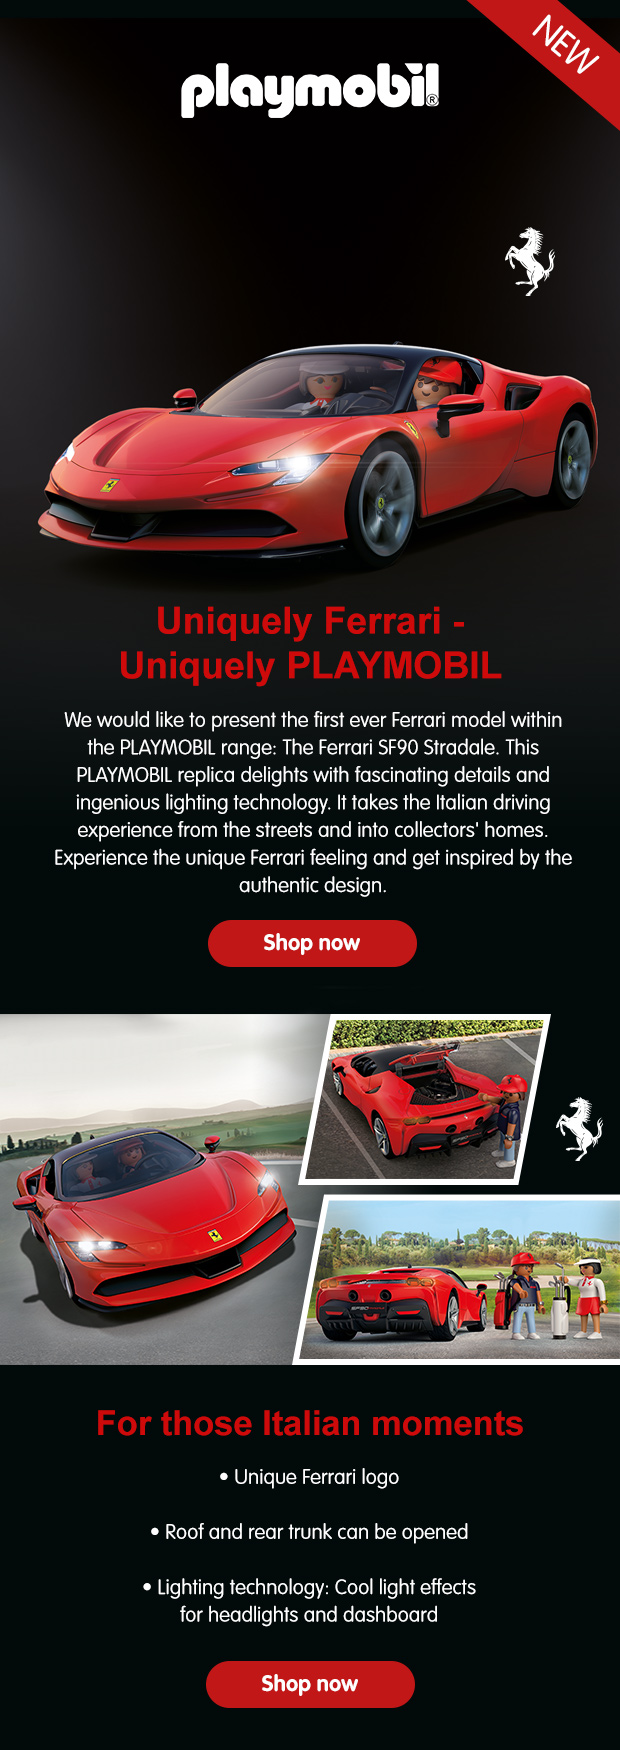 Playmobil: Ferrari SF90 Stradale Car